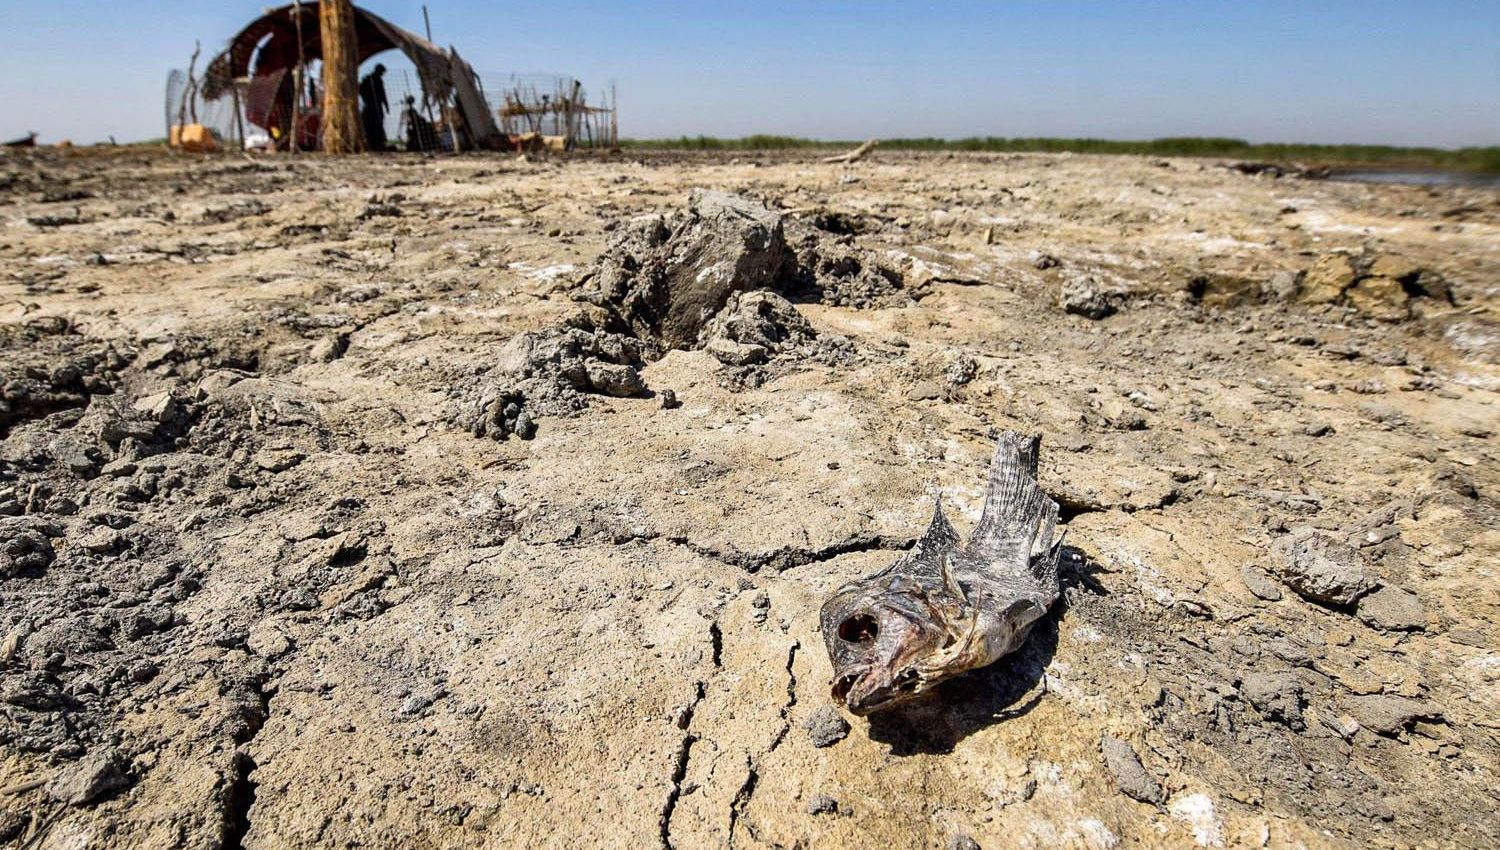 شاهد | العراق يعاني من الجفاف والسبب الأبرز: تركيا!!